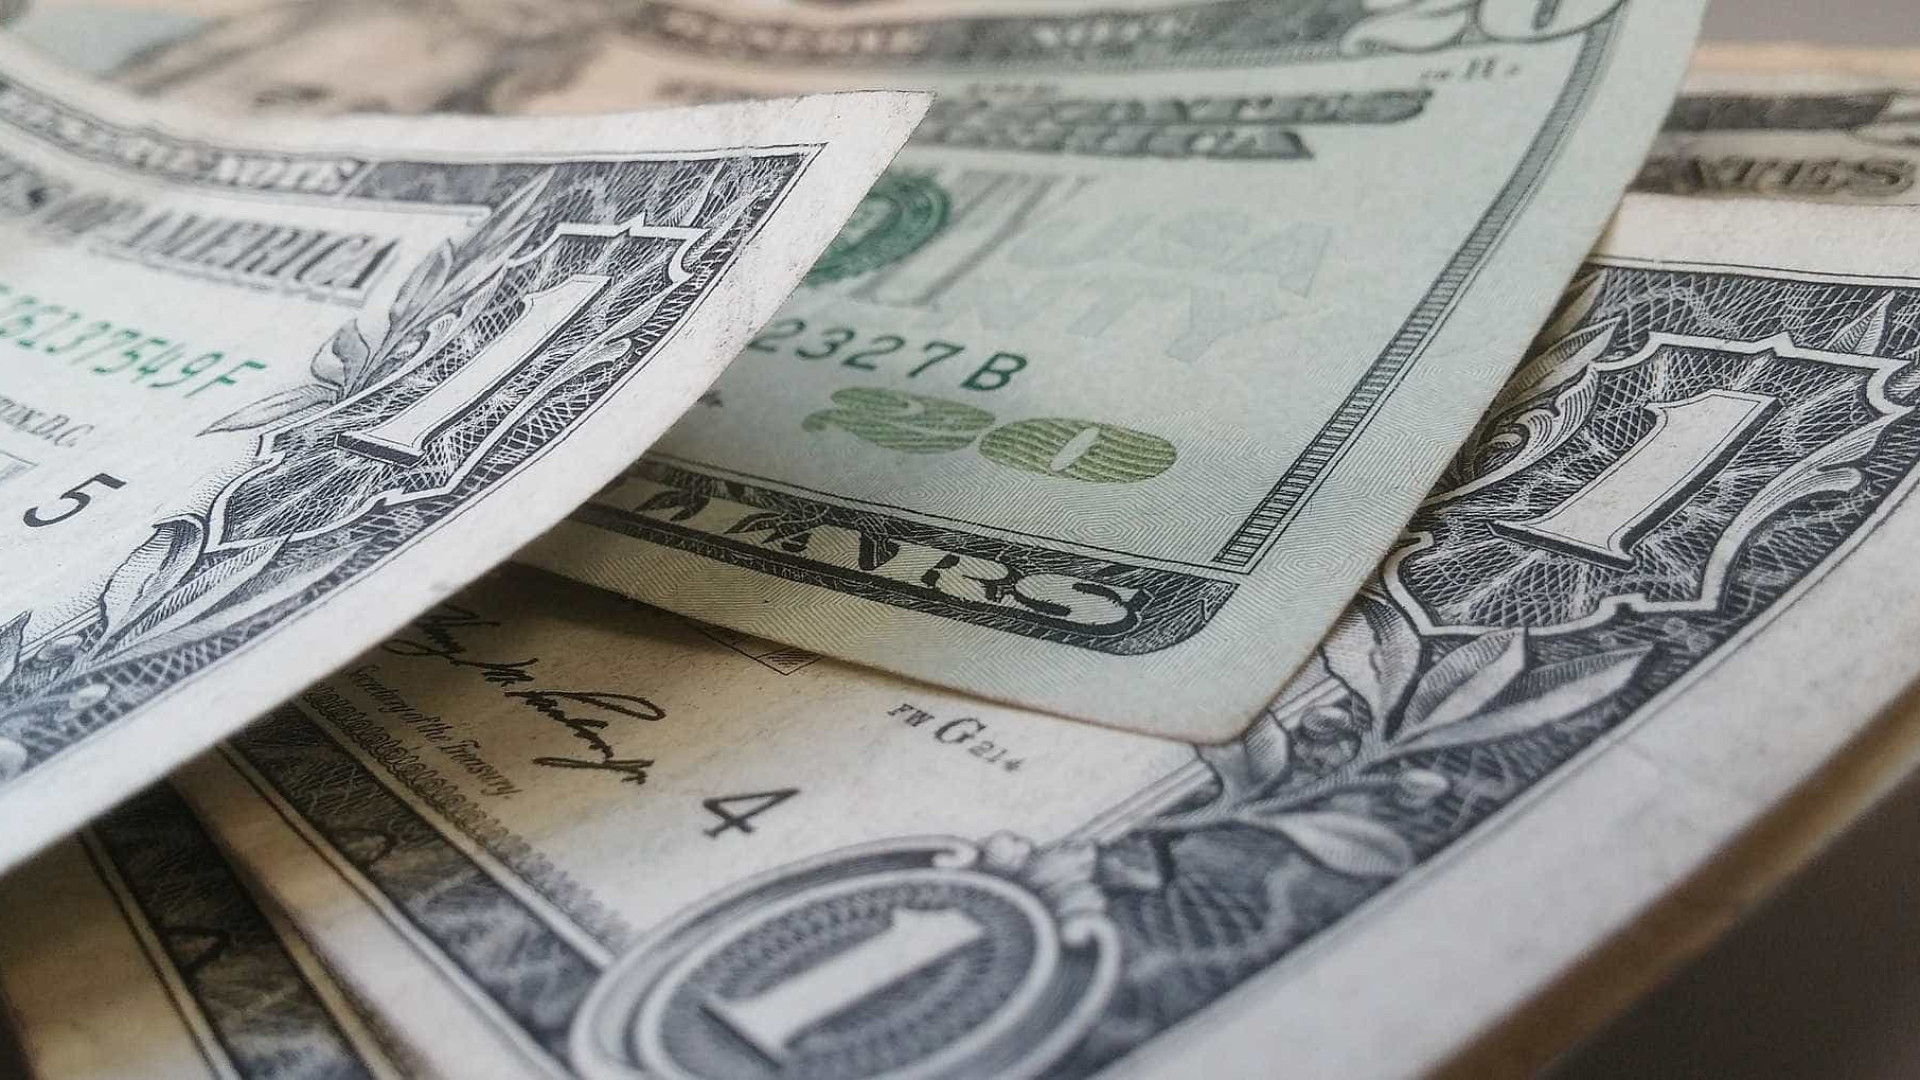 Dólar opera em alta, próximo de R$ 4,17